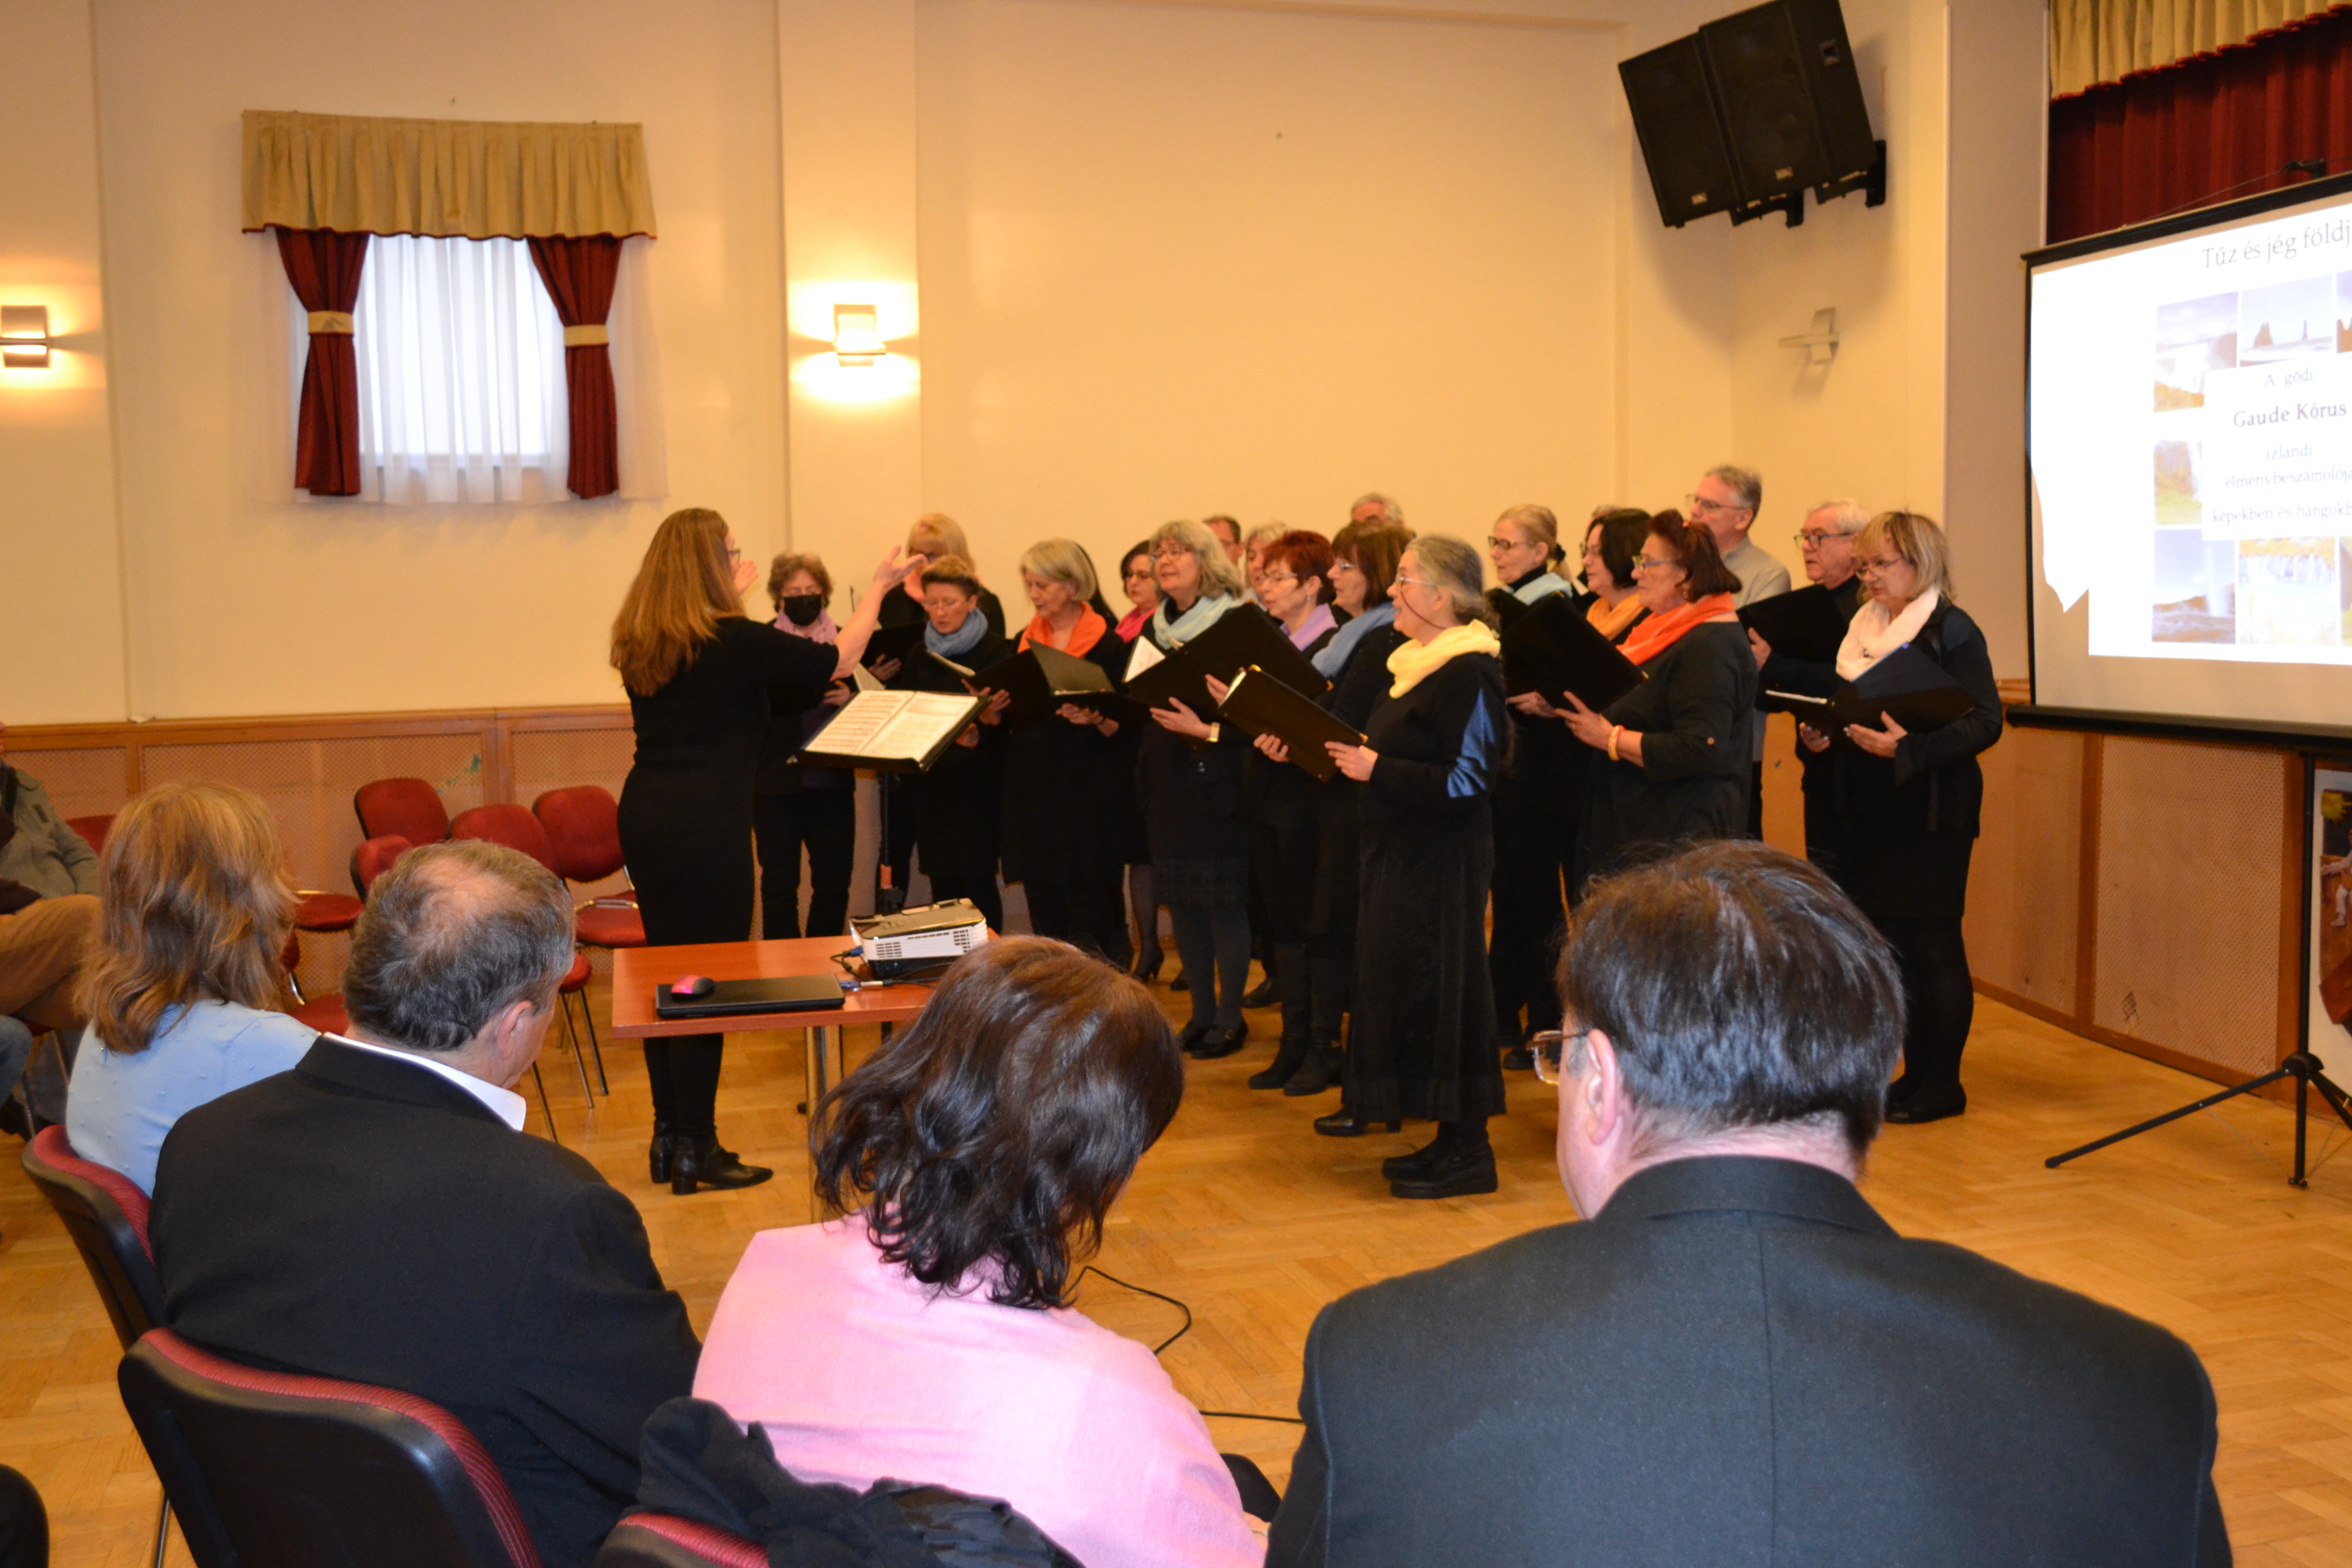 Izlandi nyelven éneklünk Csomádon a művelődési házban